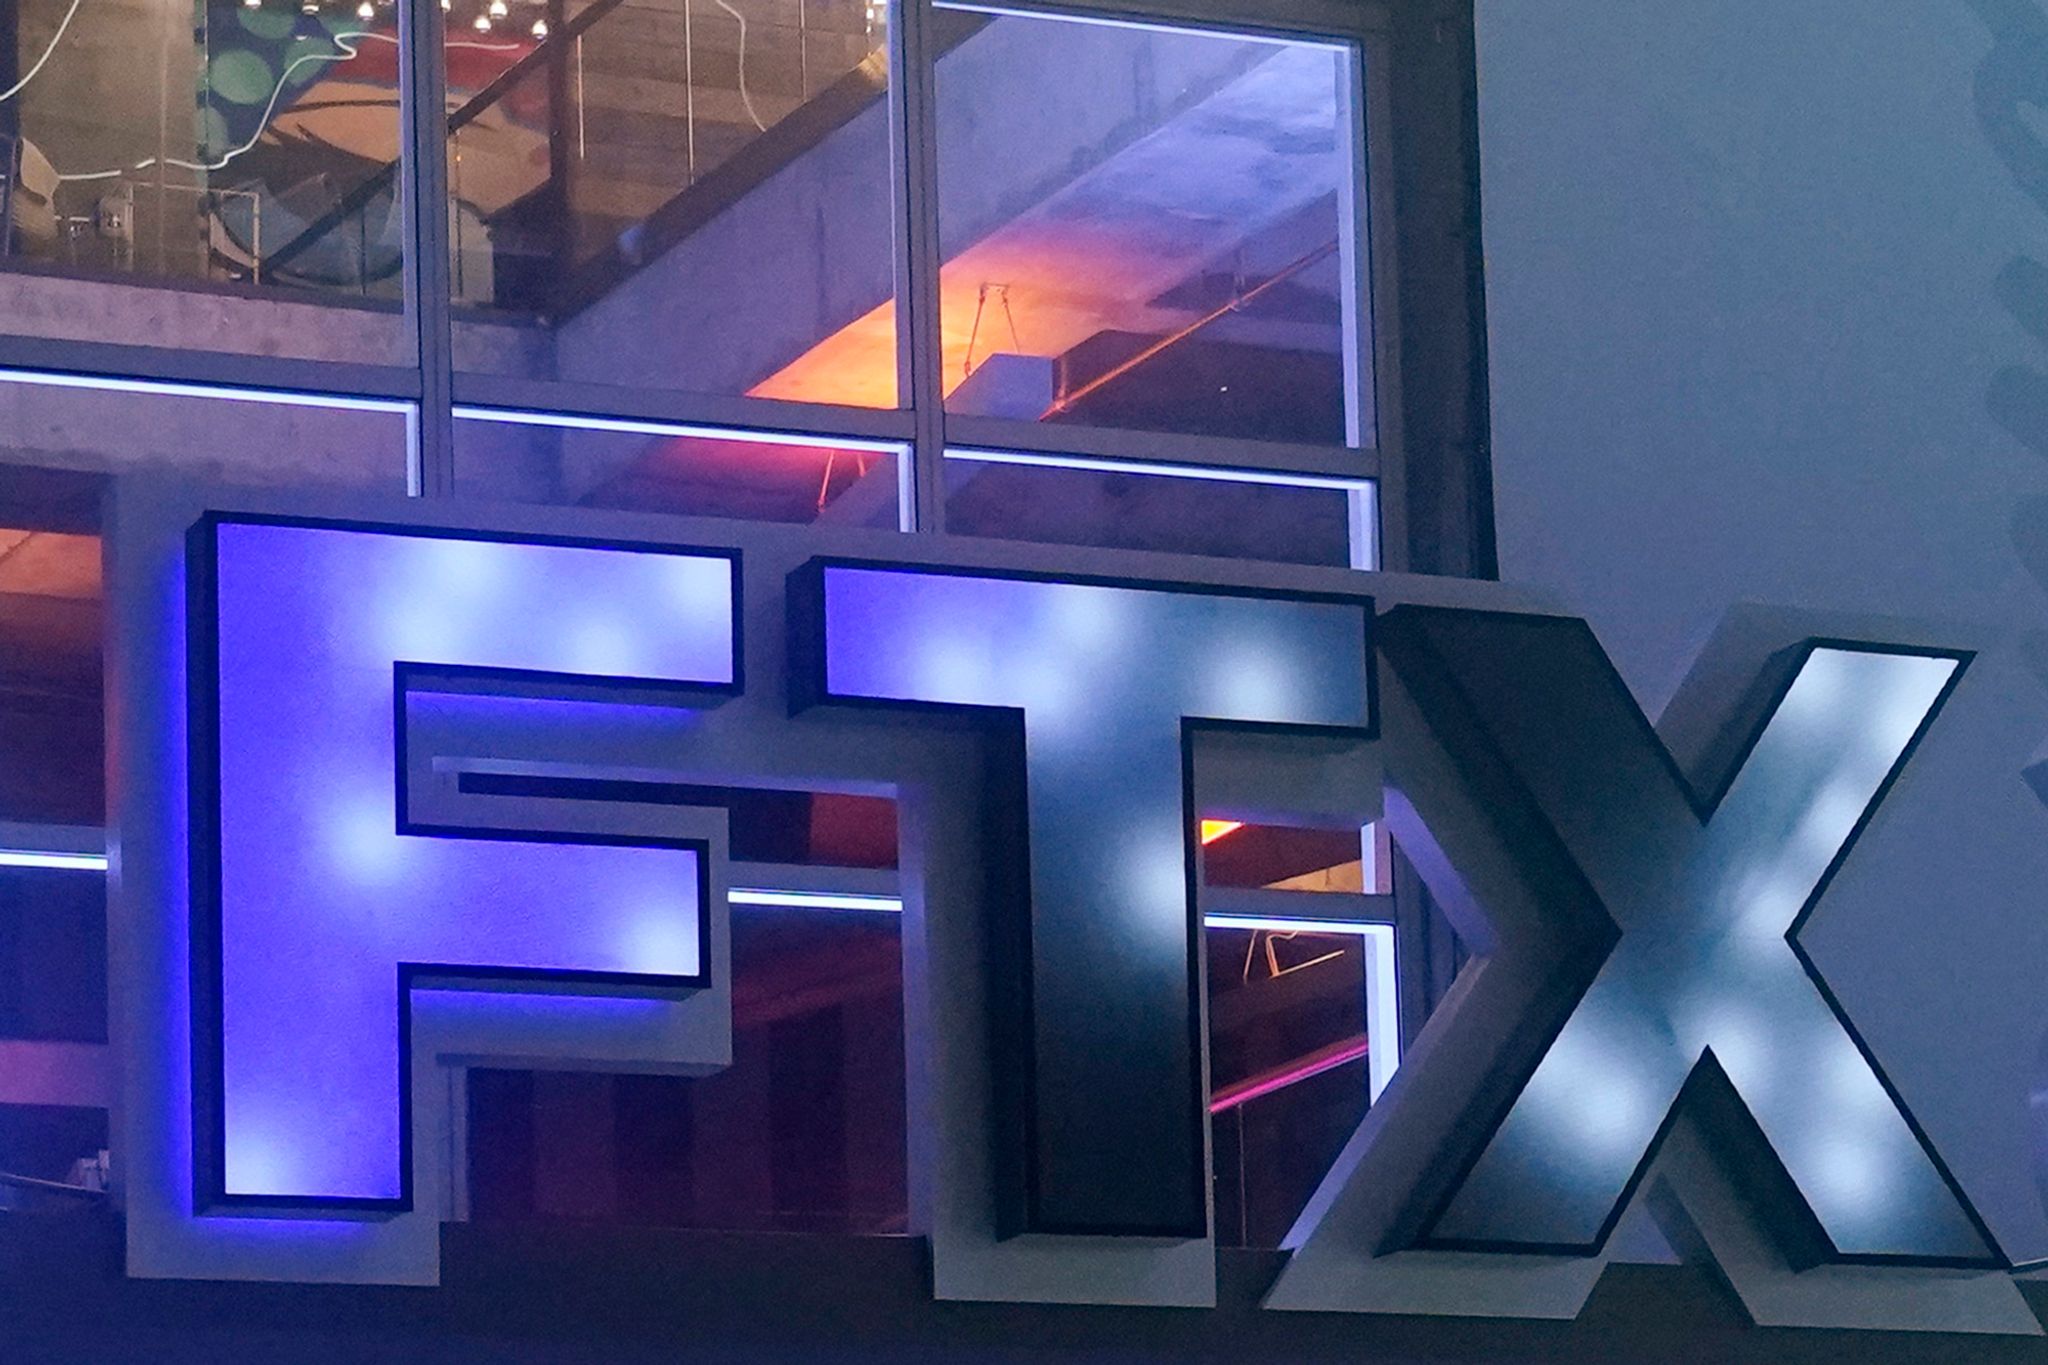 Gründer von Pleite-Kryptobörse FTX beteuert seine Unschuld